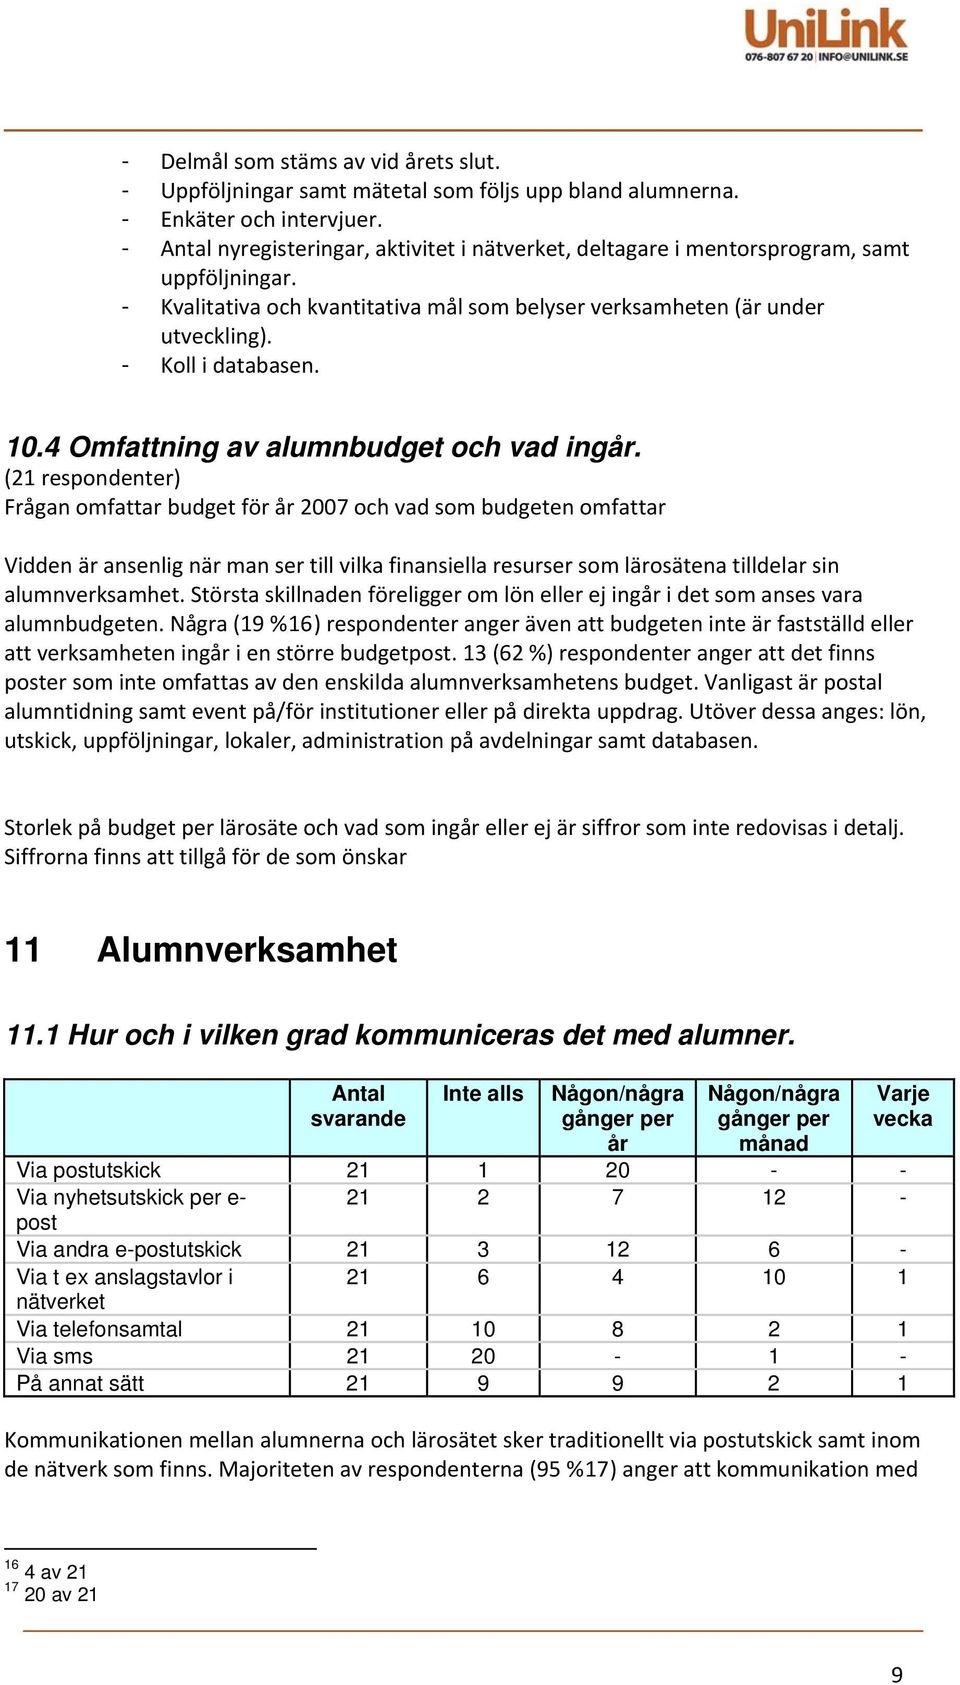 10.4 Omfattning av alumnbudget och vad ingår.